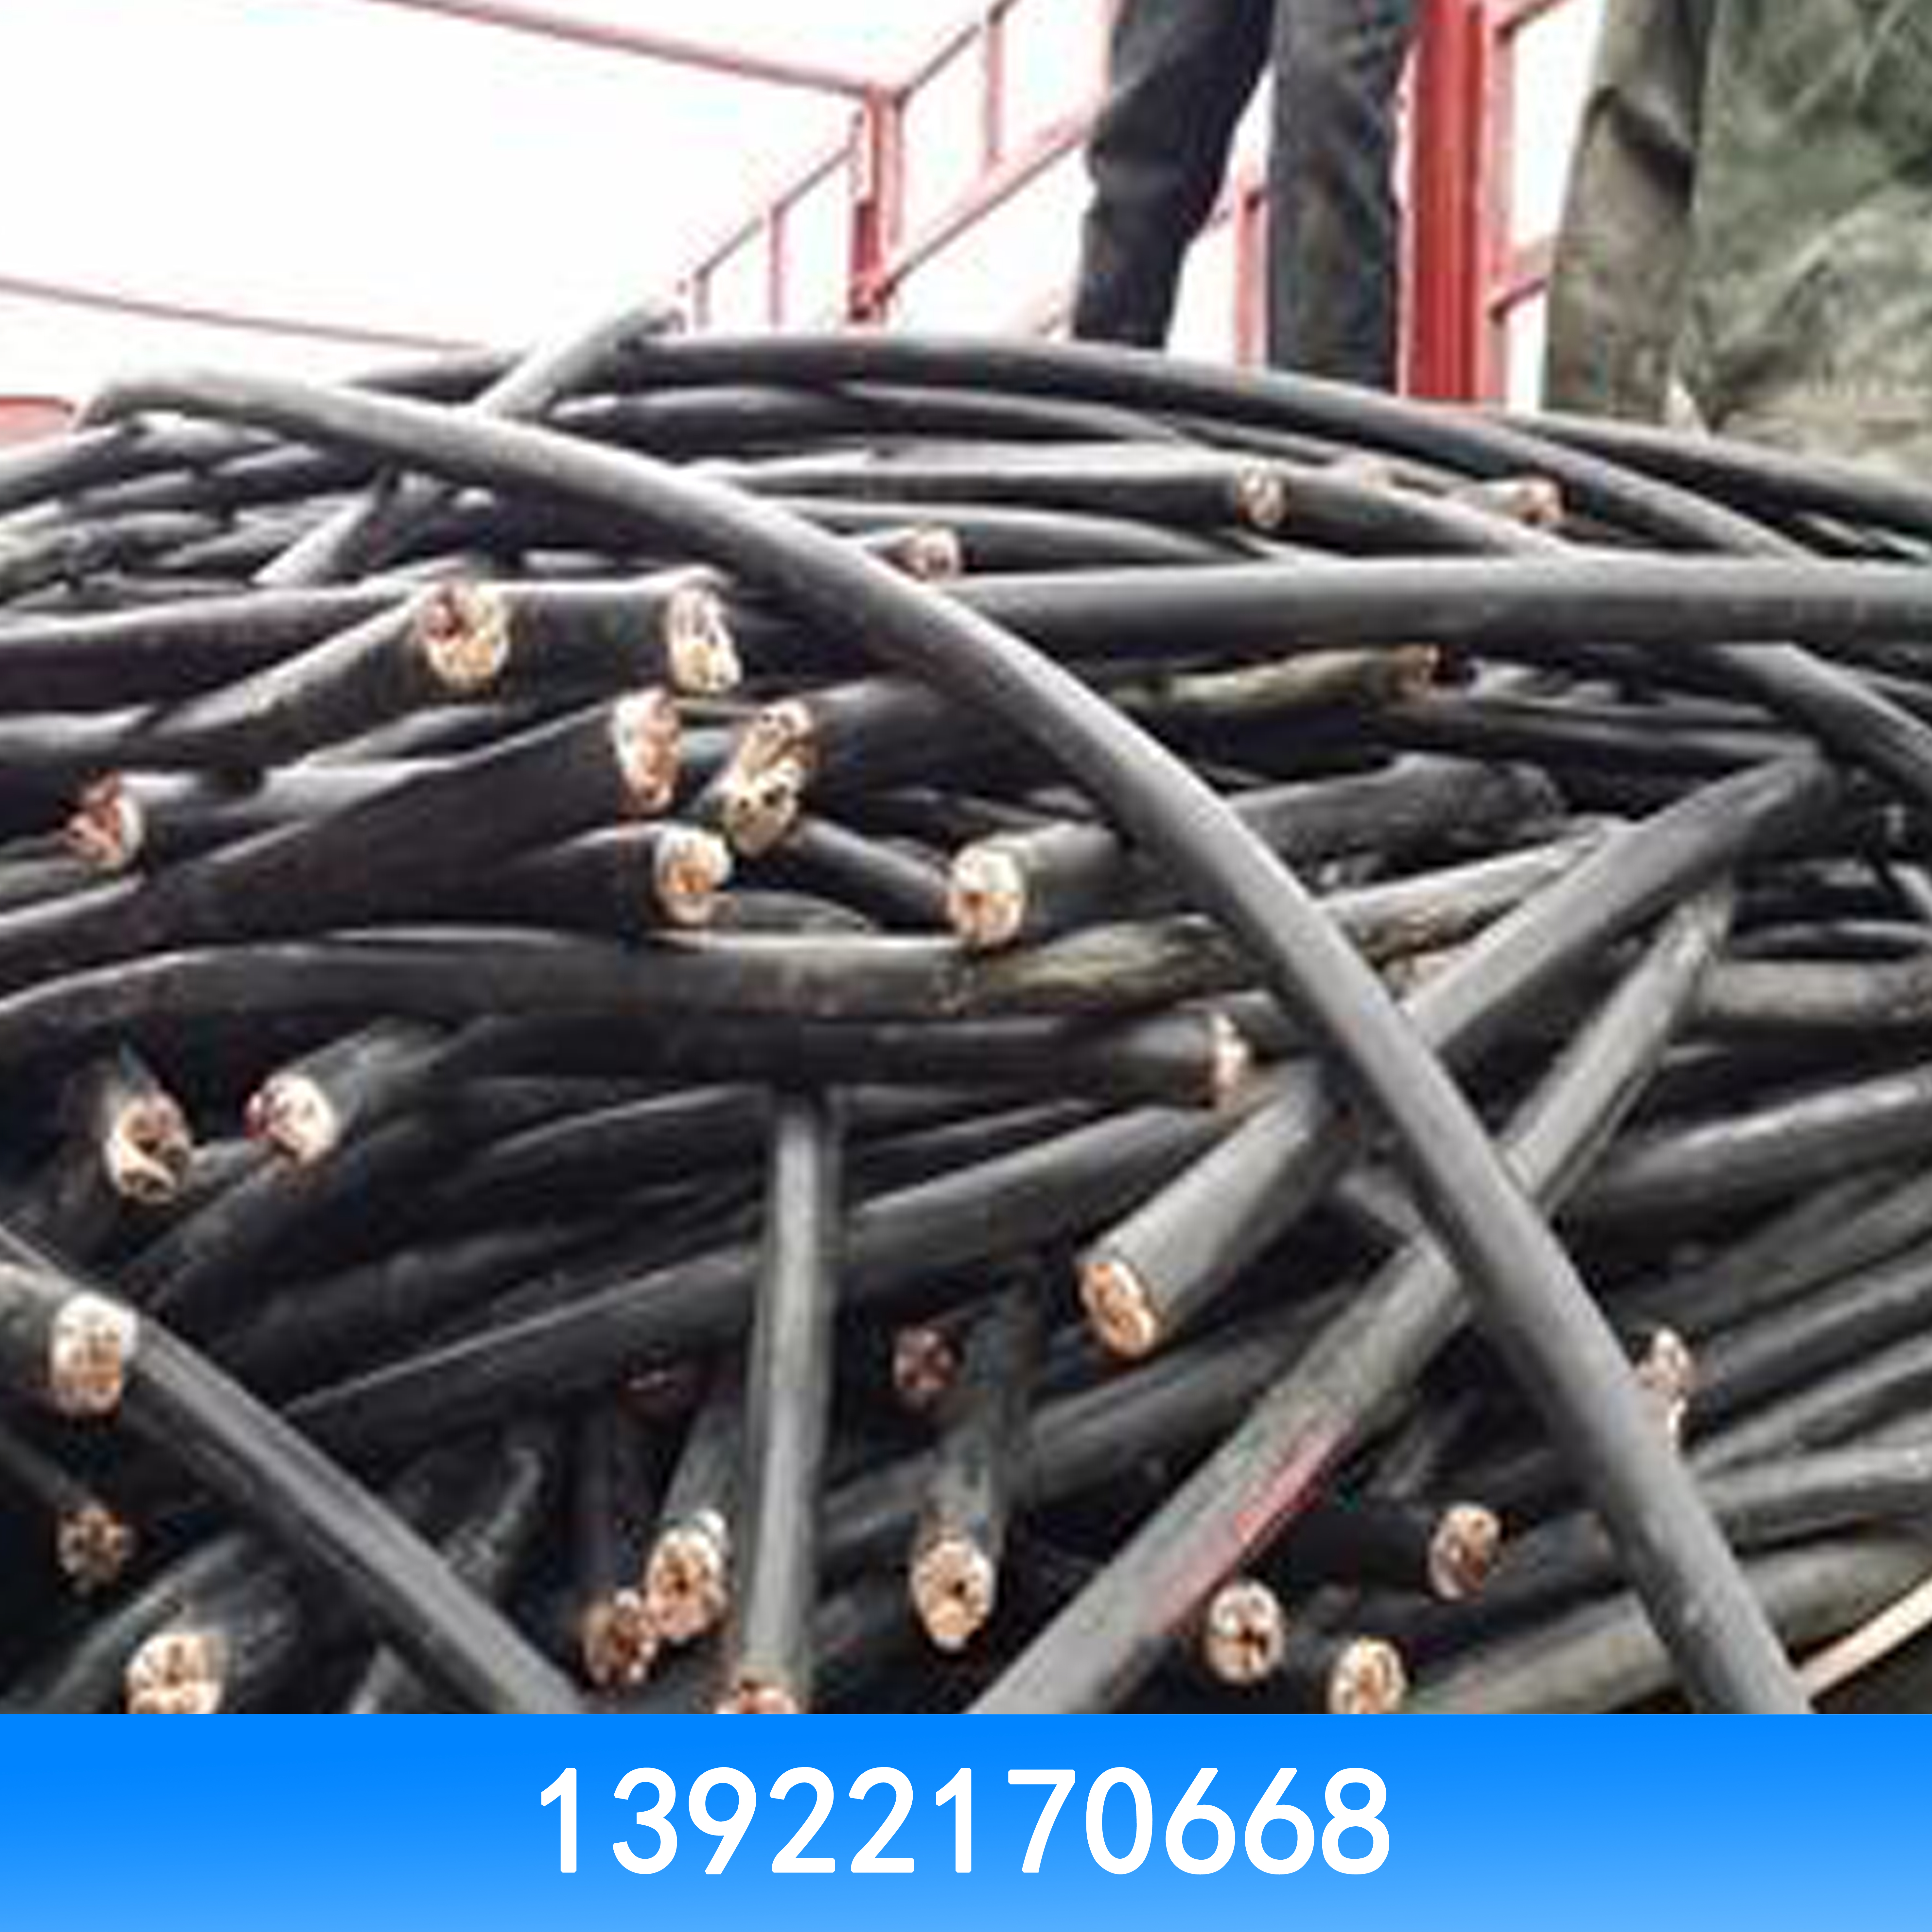 广州市二手电线电缆回收厂家高价回收电线电缆 高价回收二手电线电缆 二手电线电缆回收